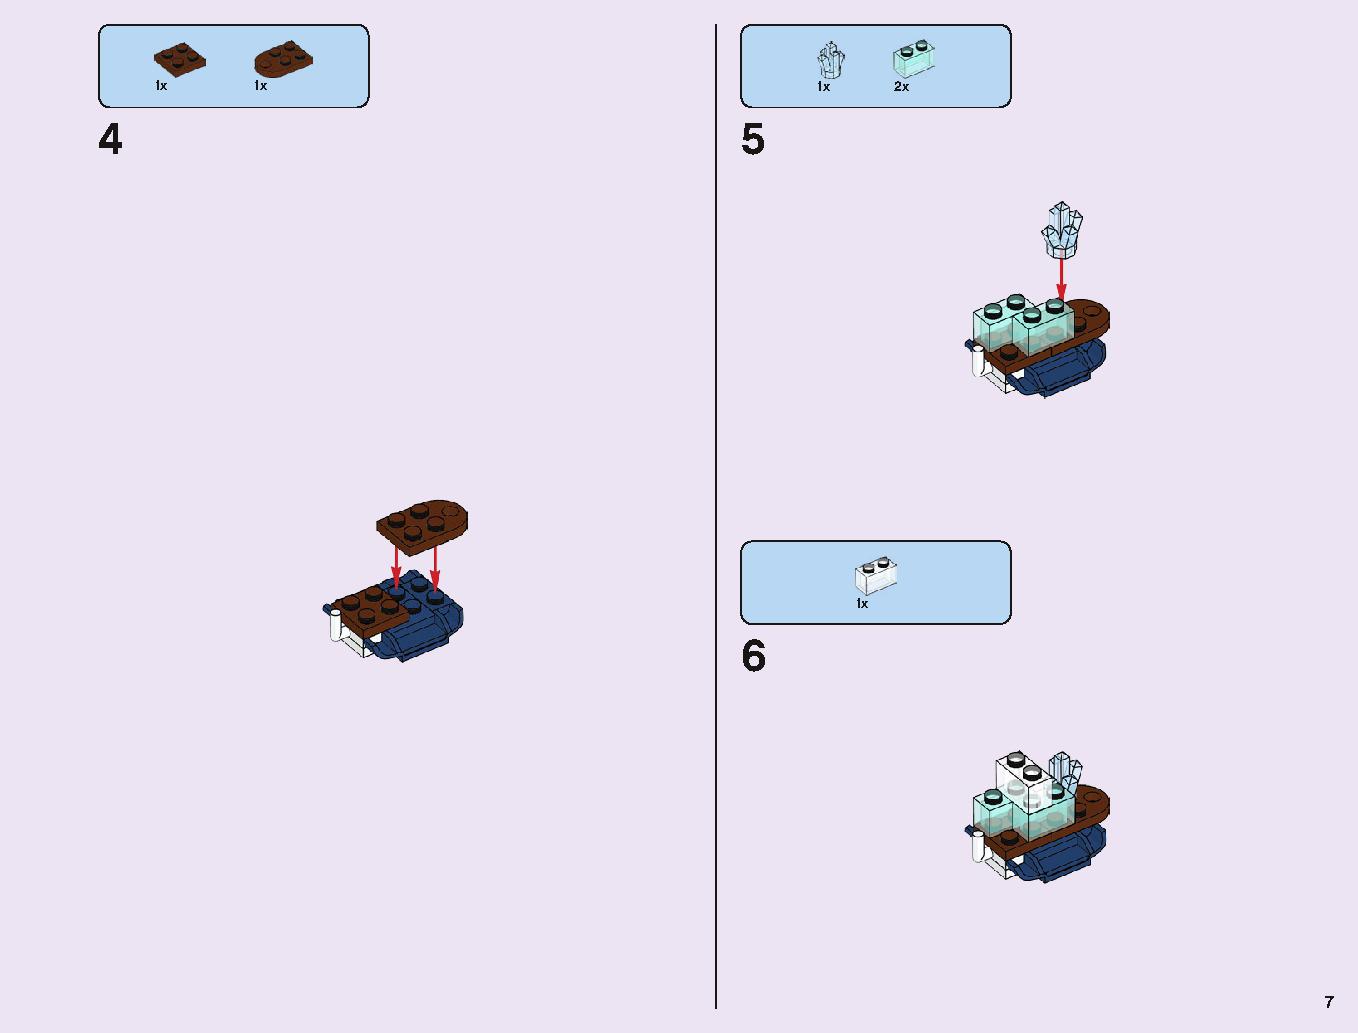 アナと雪の女王 “アイスキャッスル・ファンタジー” 43172 レゴの商品情報 レゴの説明書・組立方法 7 page